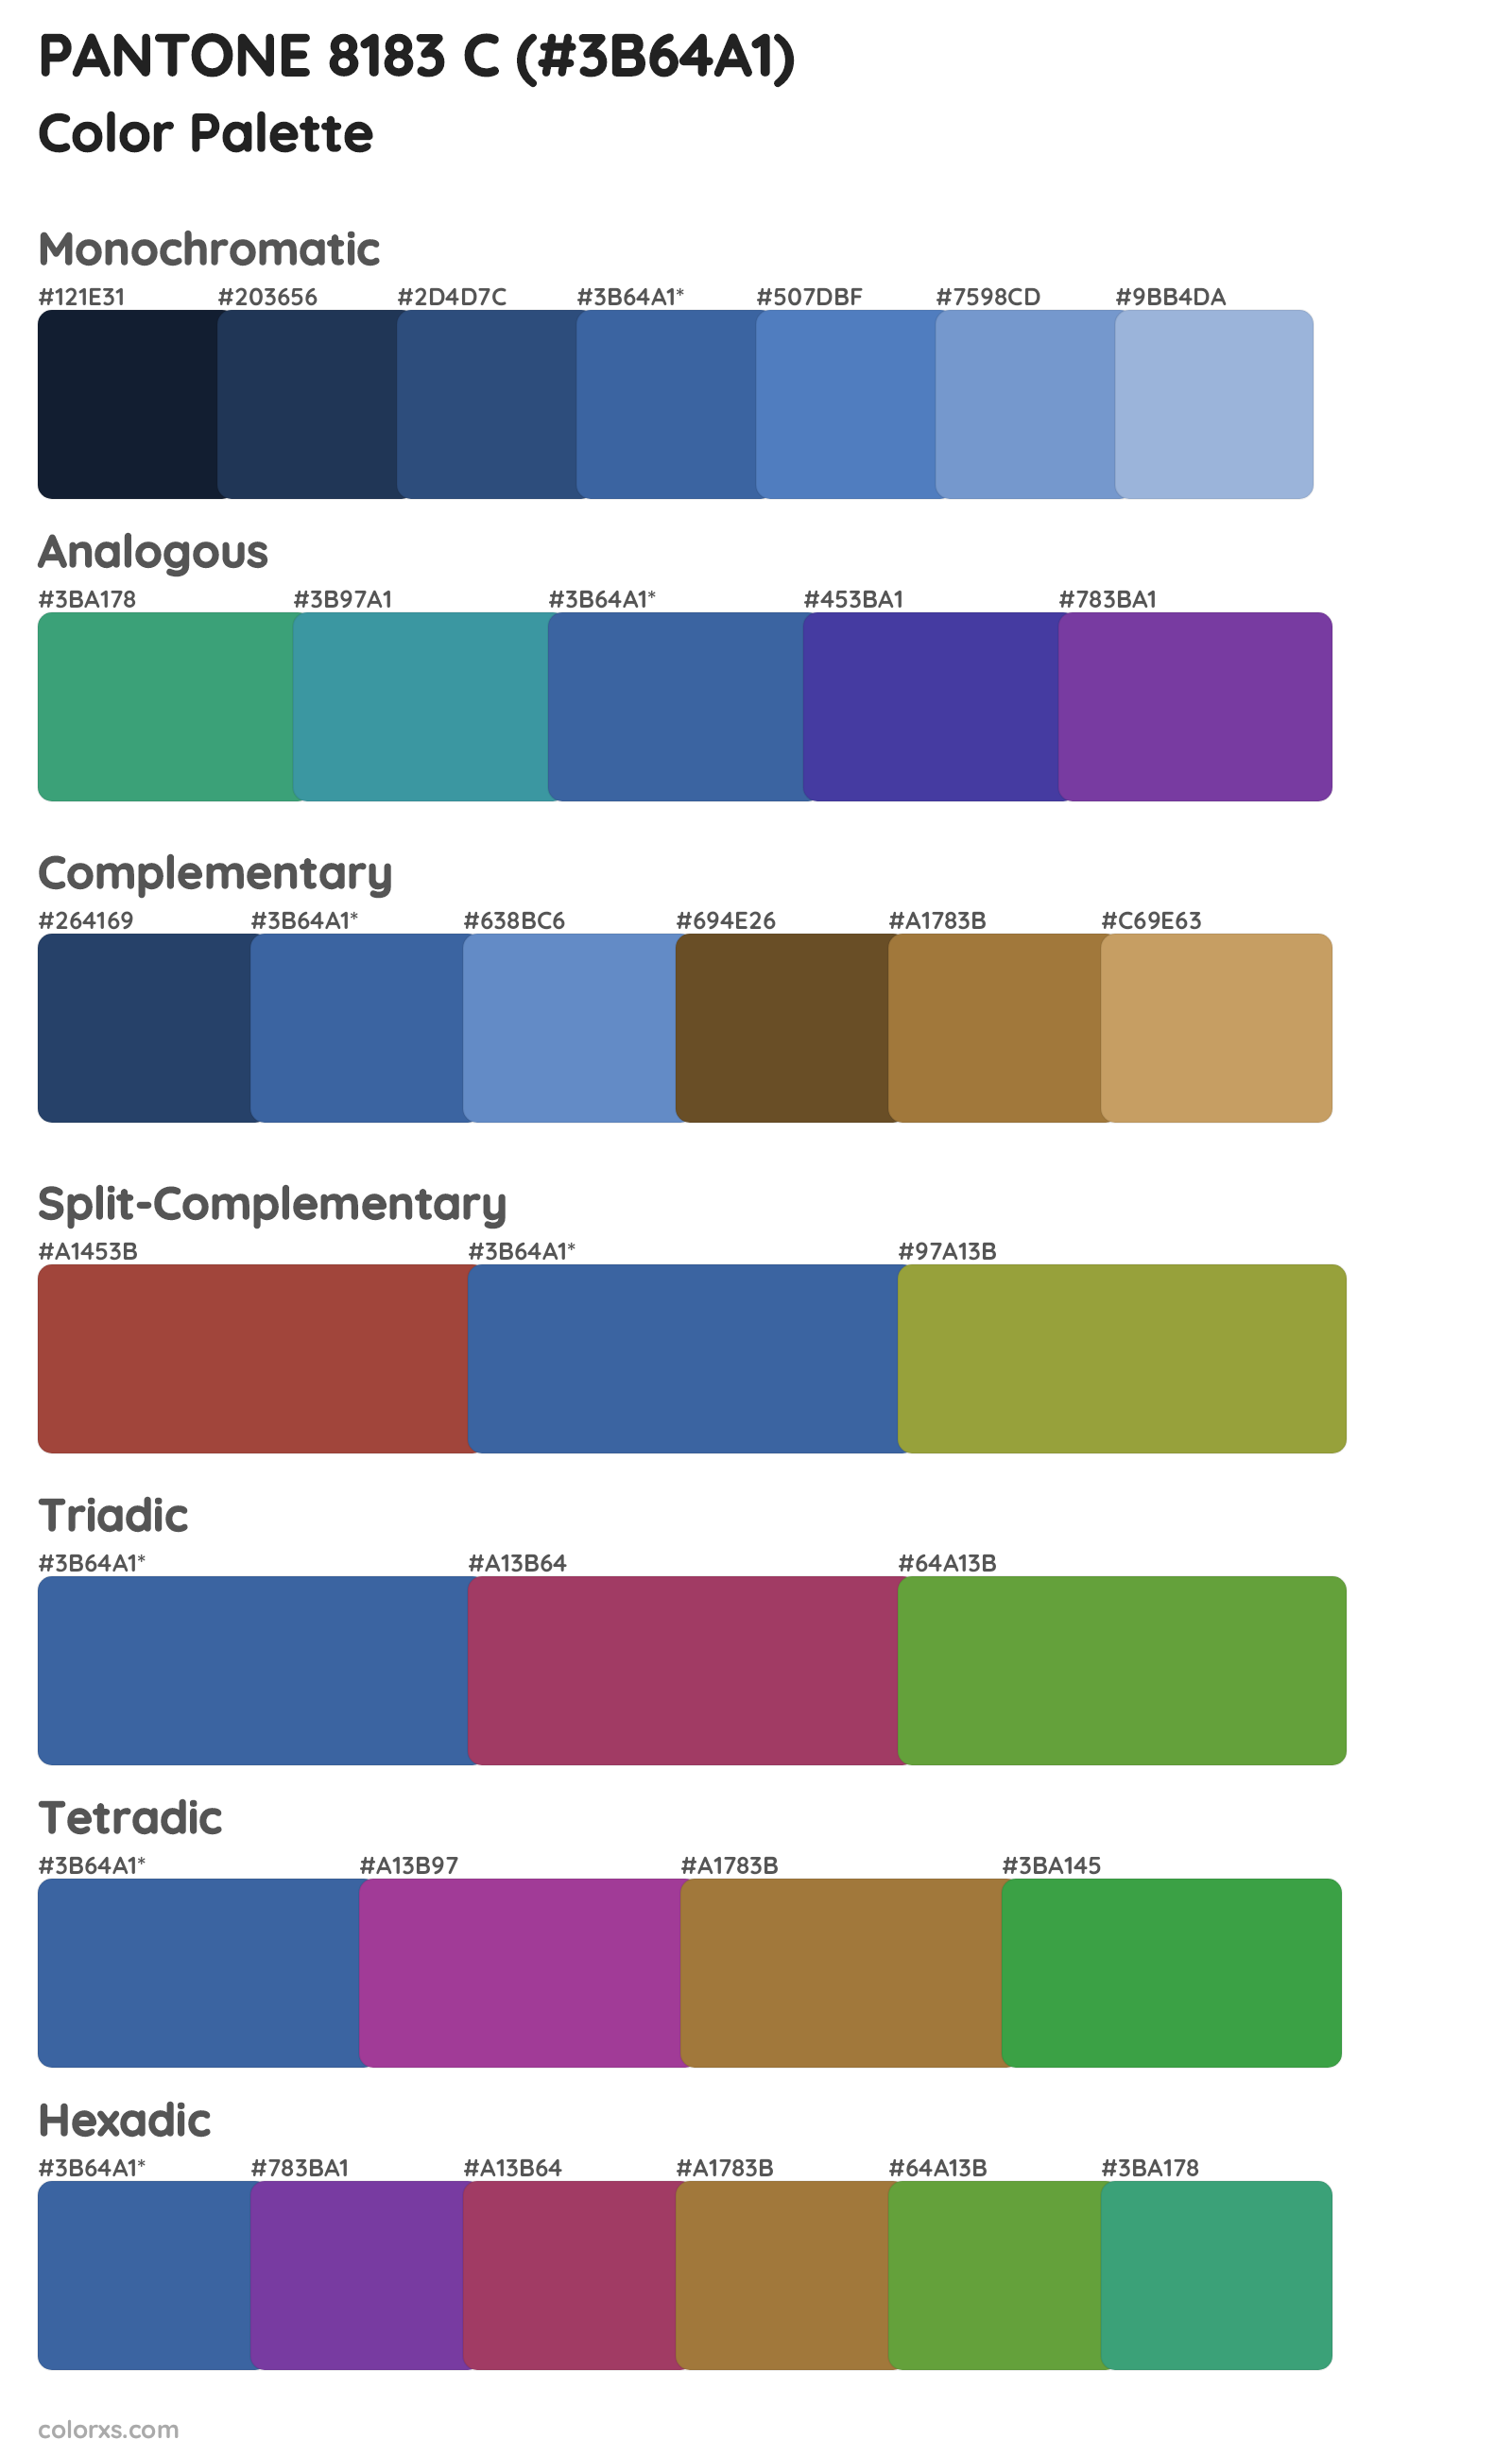 PANTONE 8183 C Color Scheme Palettes